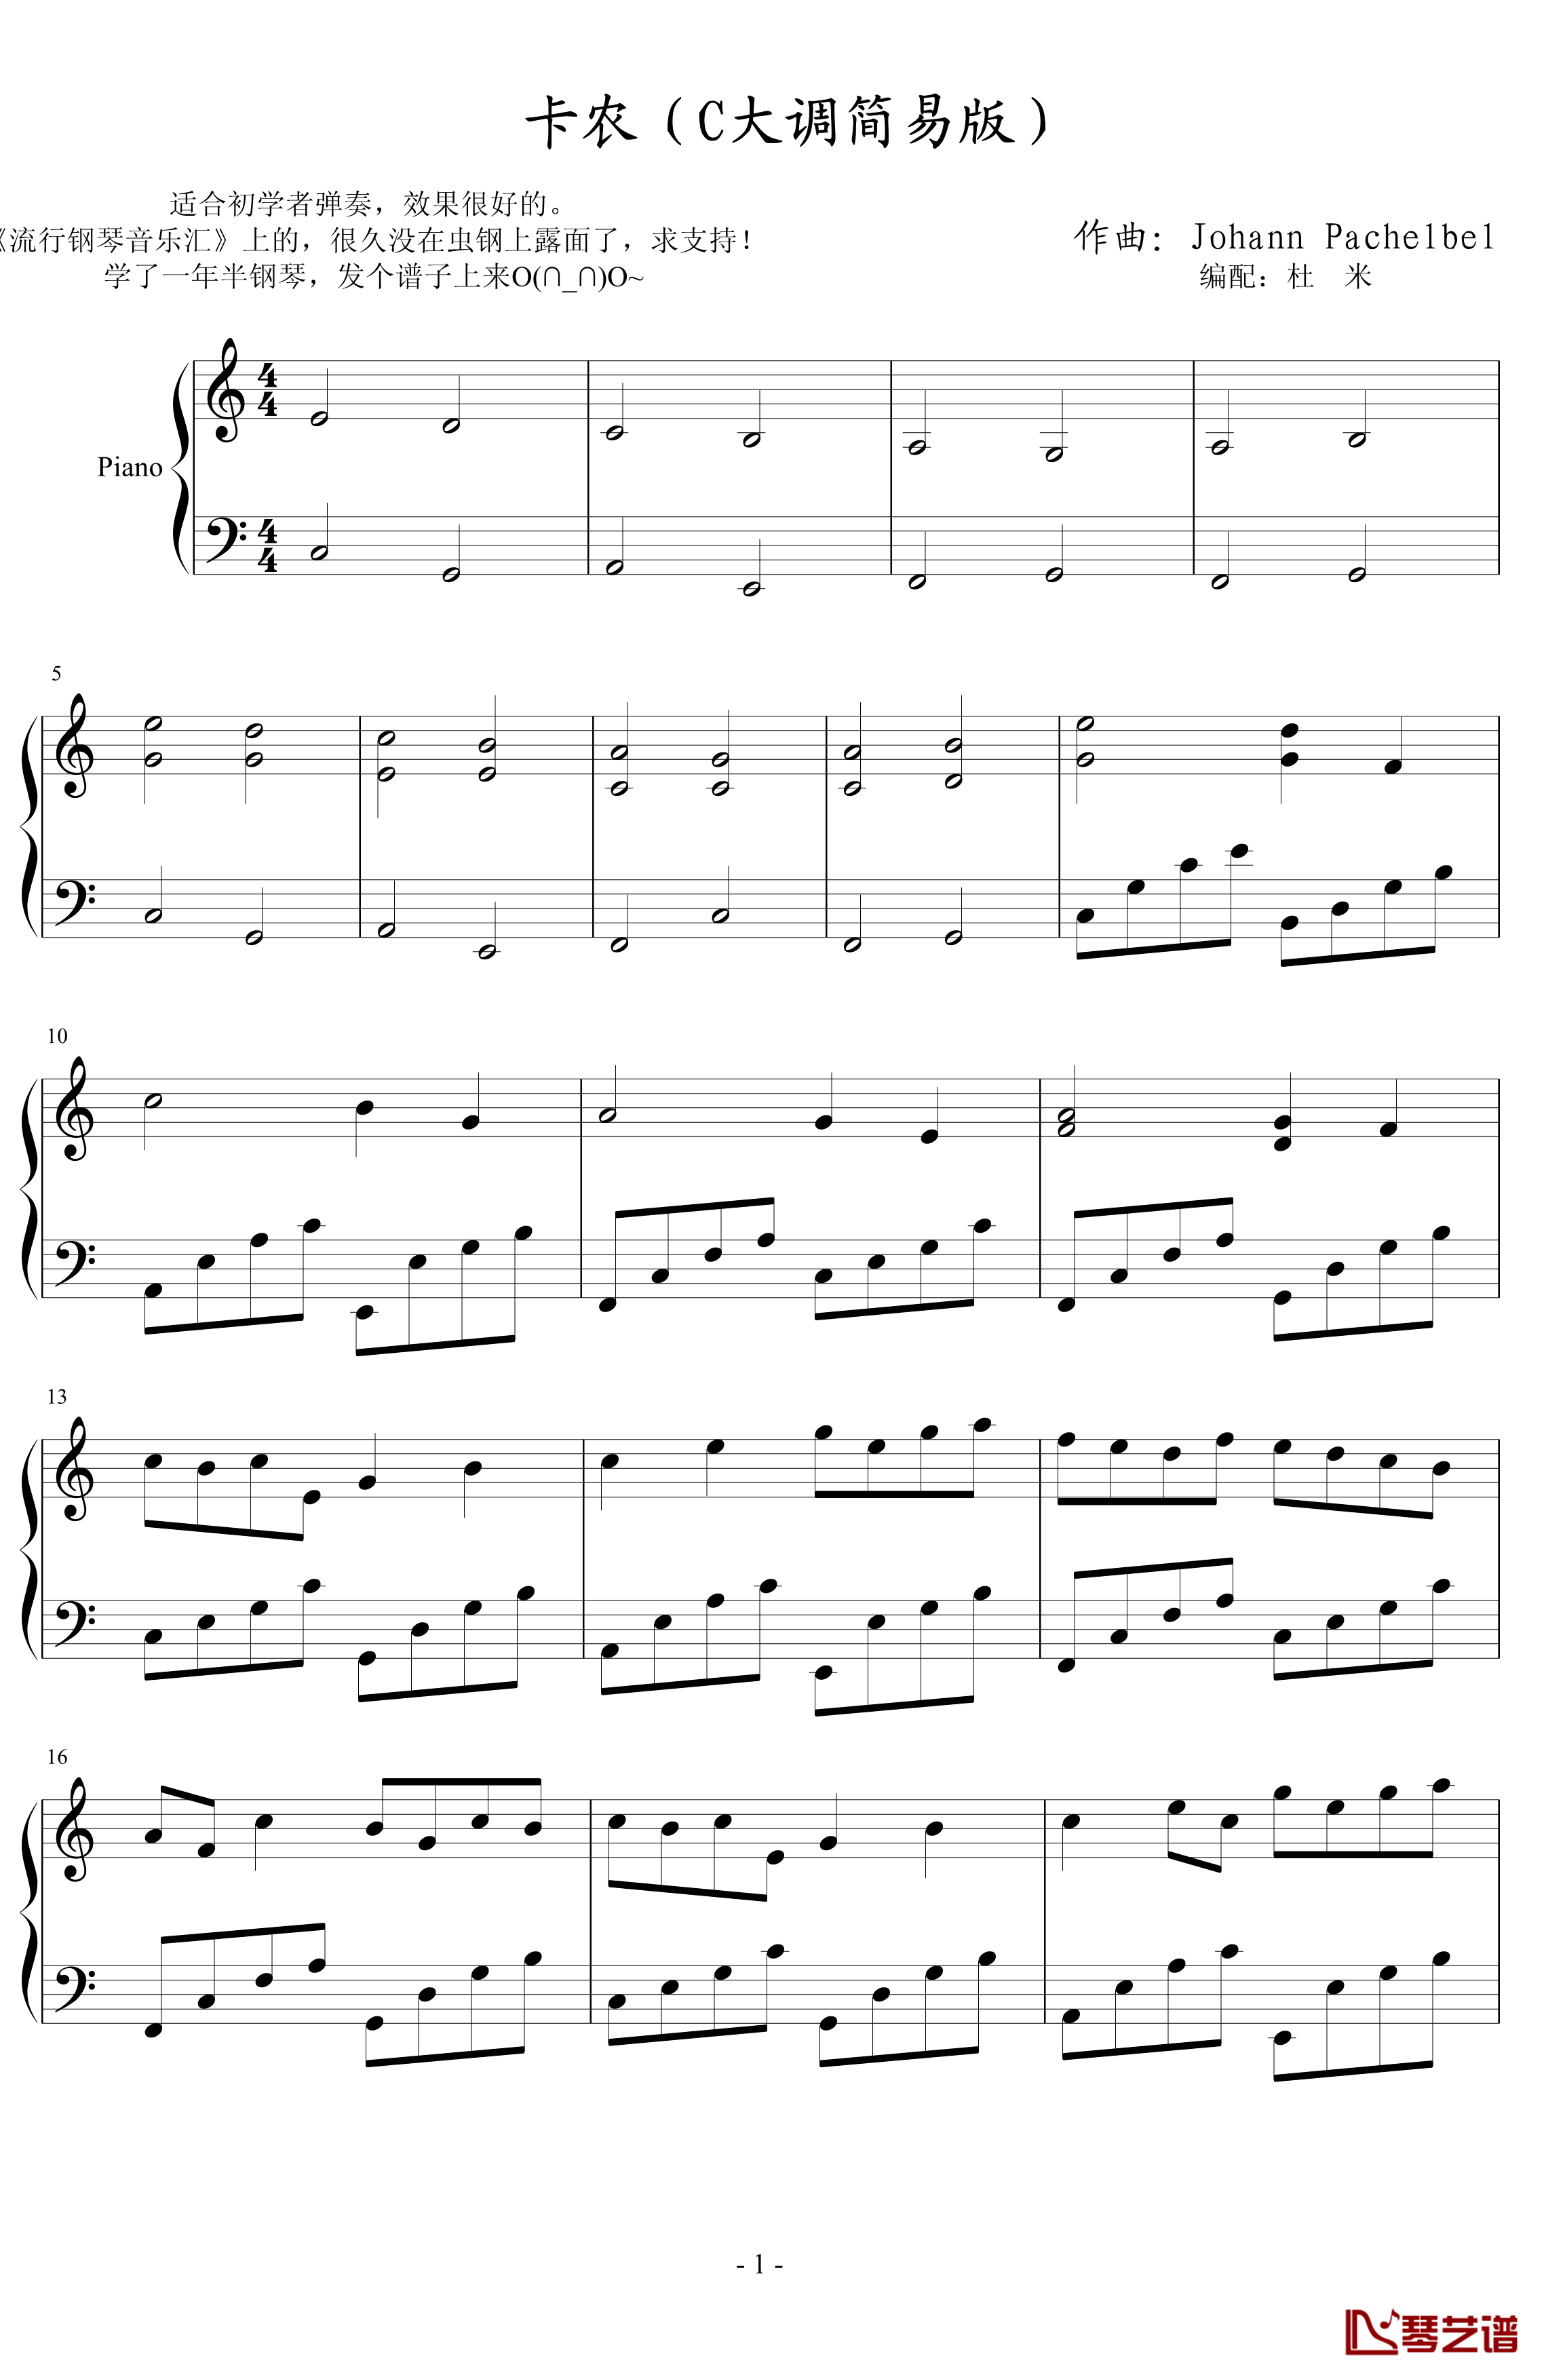 卡农钢琴谱-C大调简易版-帕赫贝尔-Pachelbel1